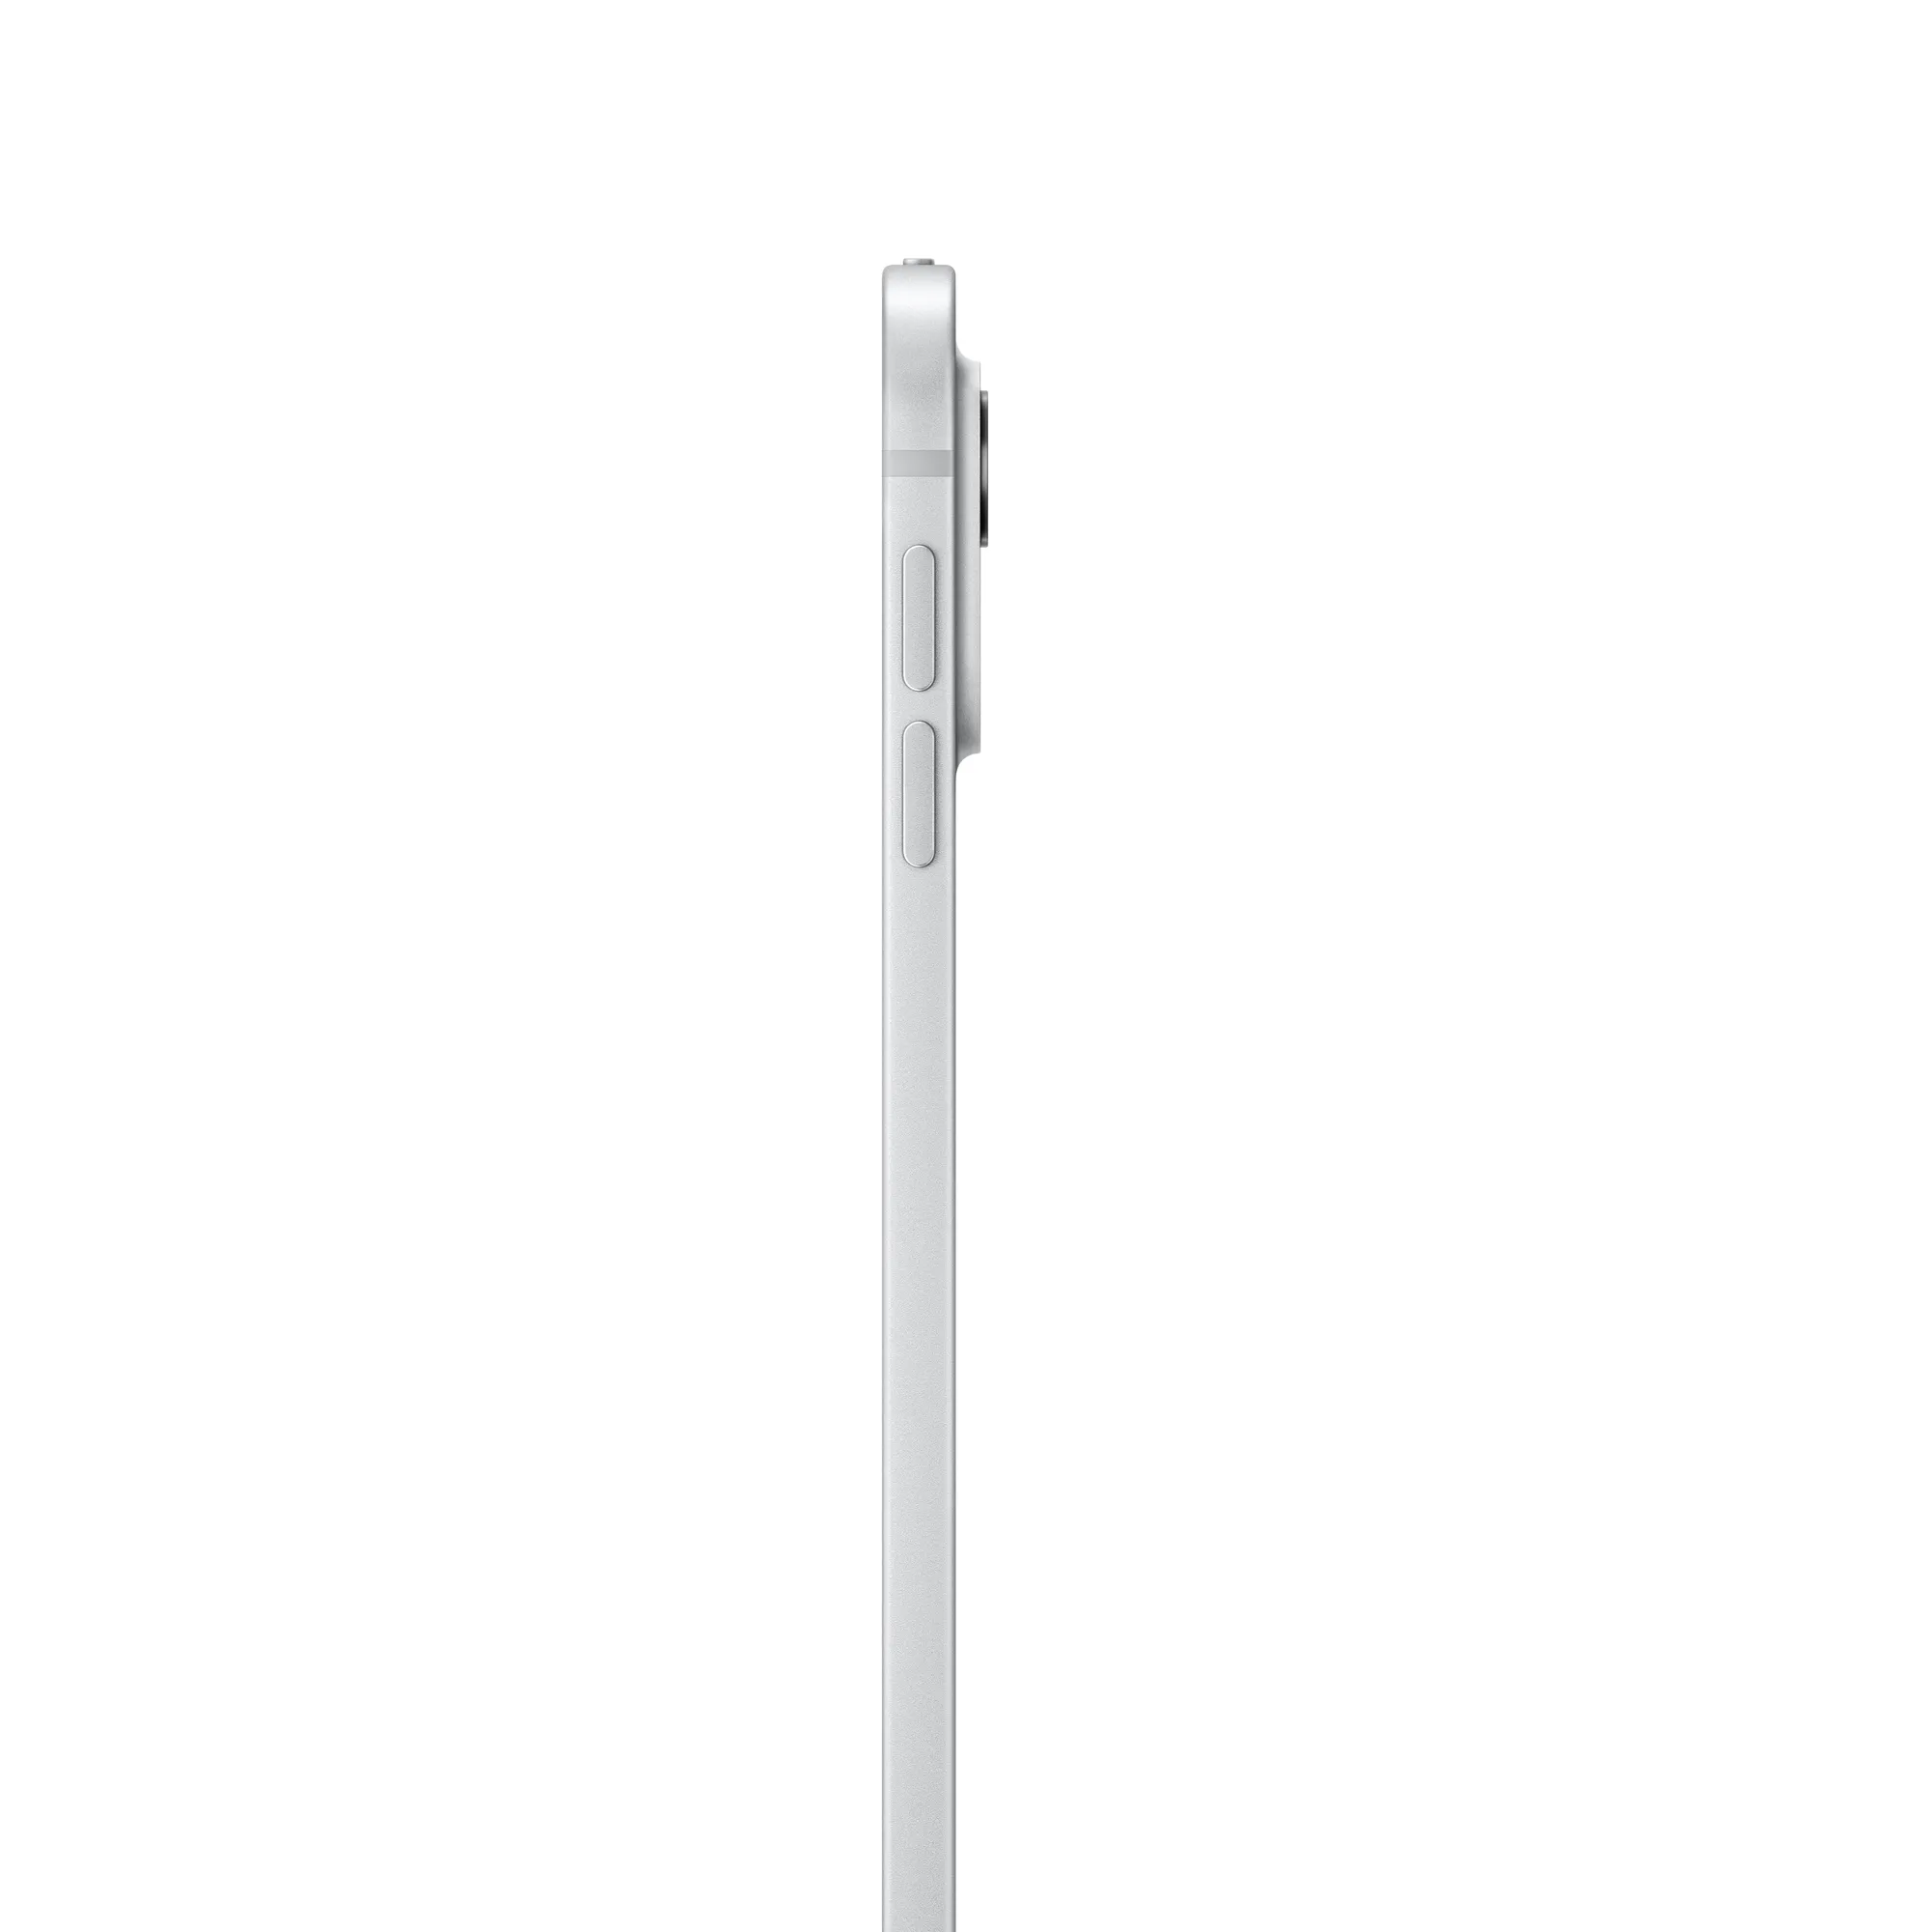 13 hüvelykes iPad Pro, Wi-Fi + Cellular, 256 GB, normál üveg – ezüst